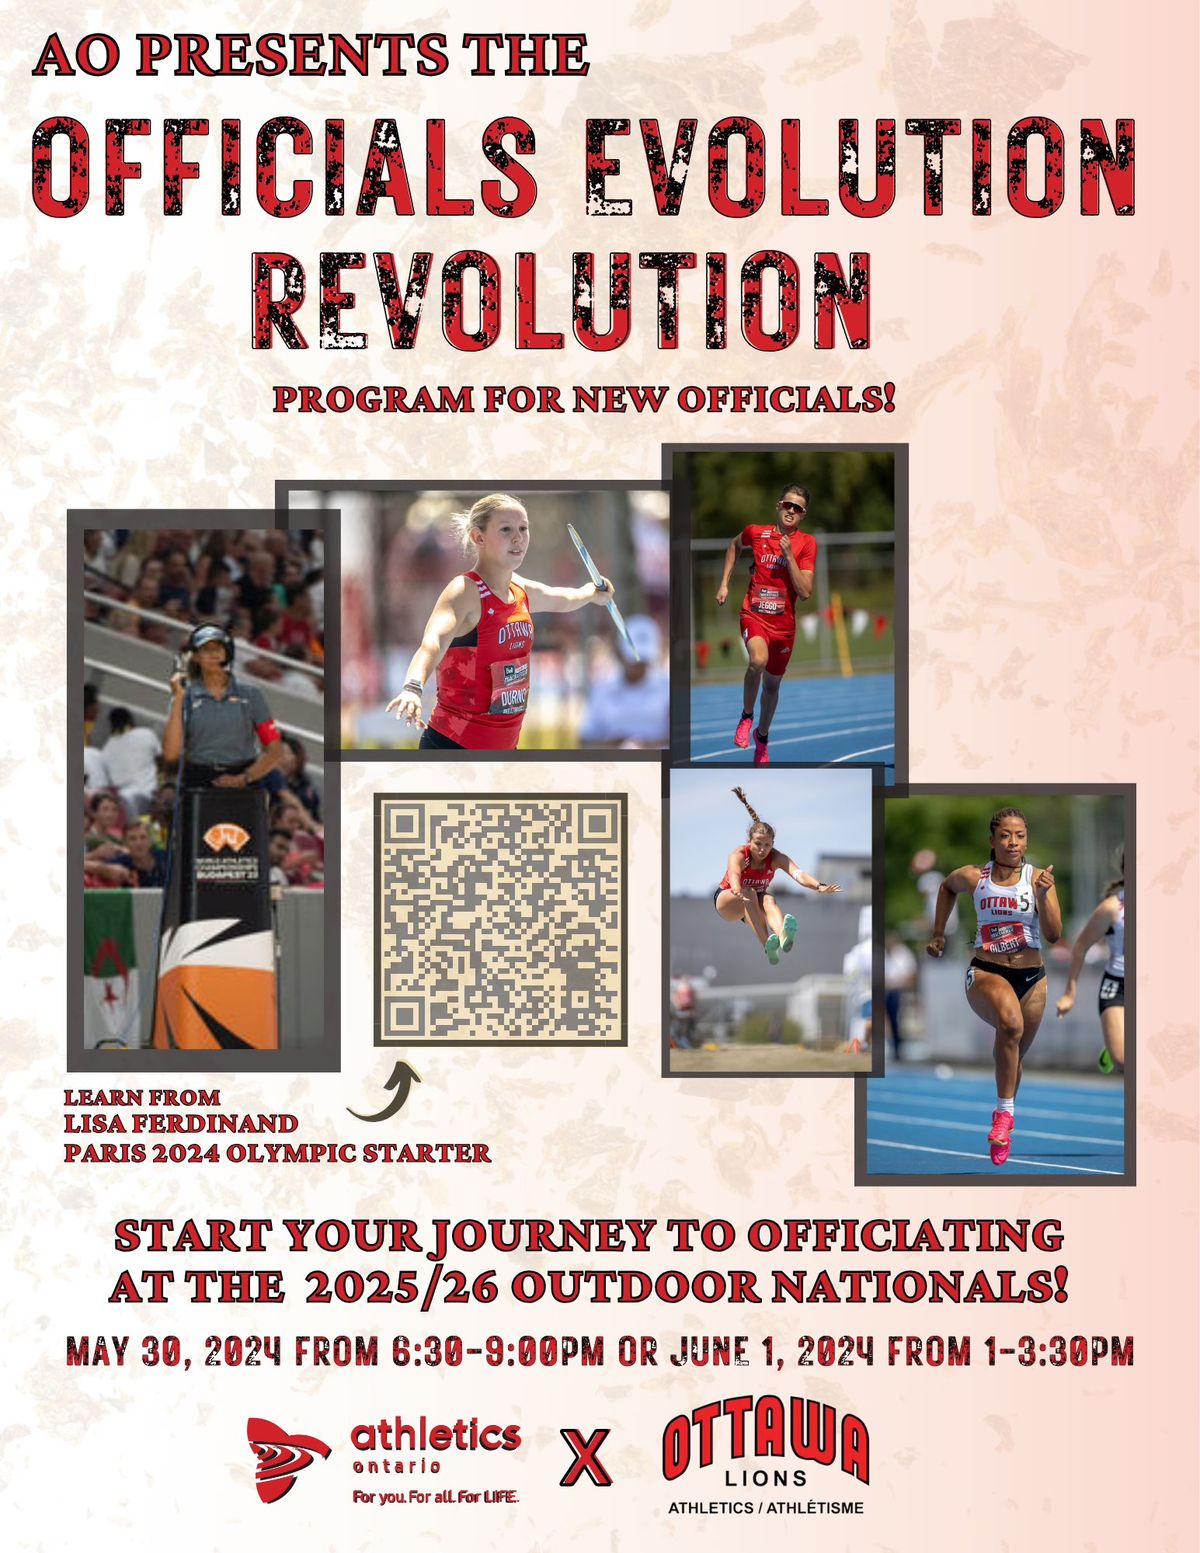 AO Officials Evolution Revolution Certification Program